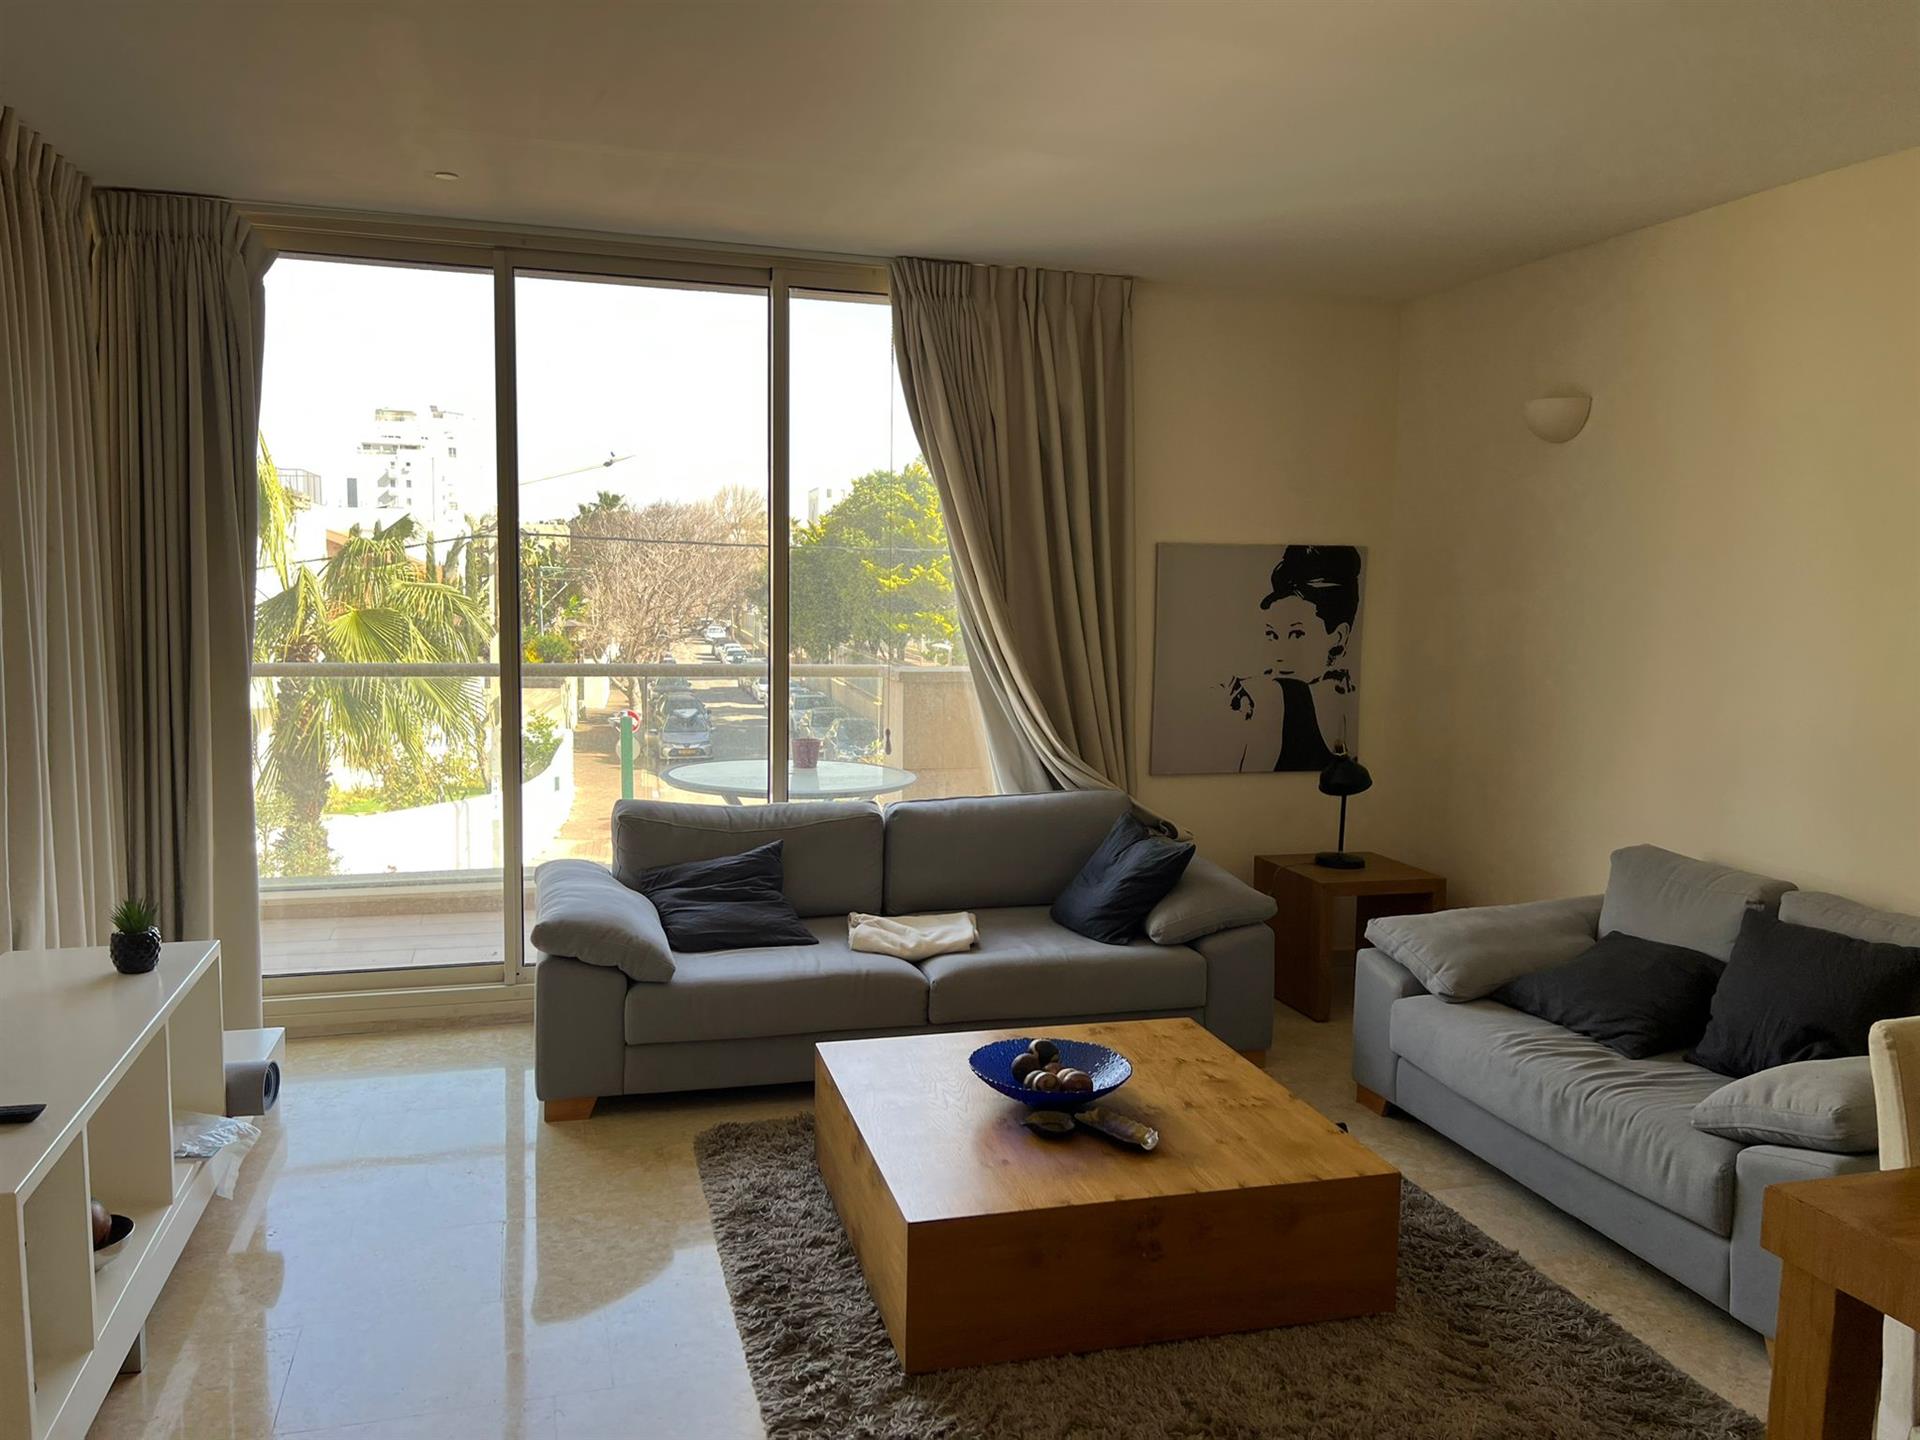 For sale an apartment in Herzliya Pituach, near the Acadia Hotel